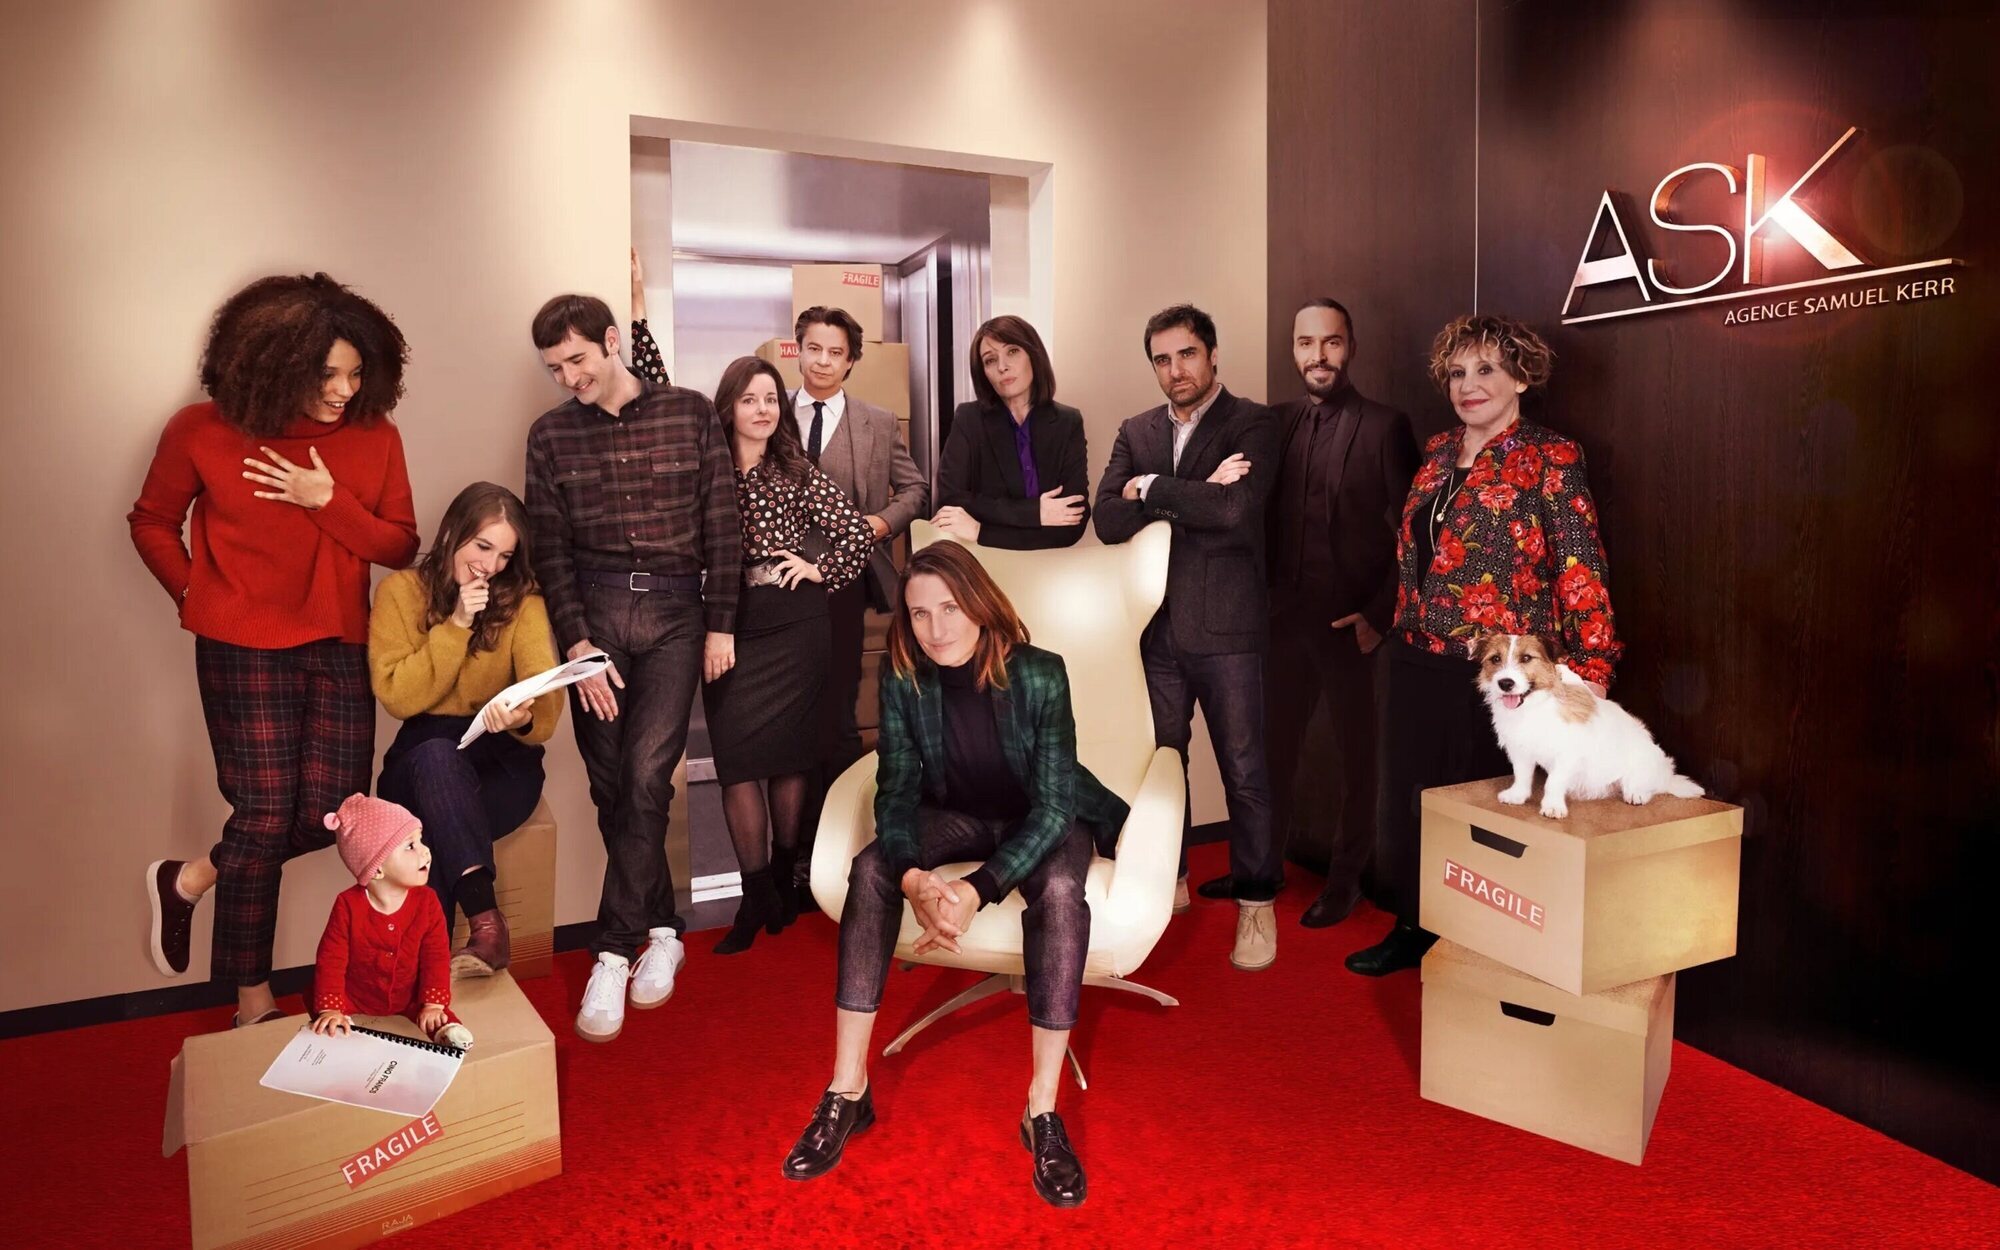 Mediaset tendrá a su propia Paquita Salas con 'La agencia', adaptación de la serie francesa 'Call my agent'